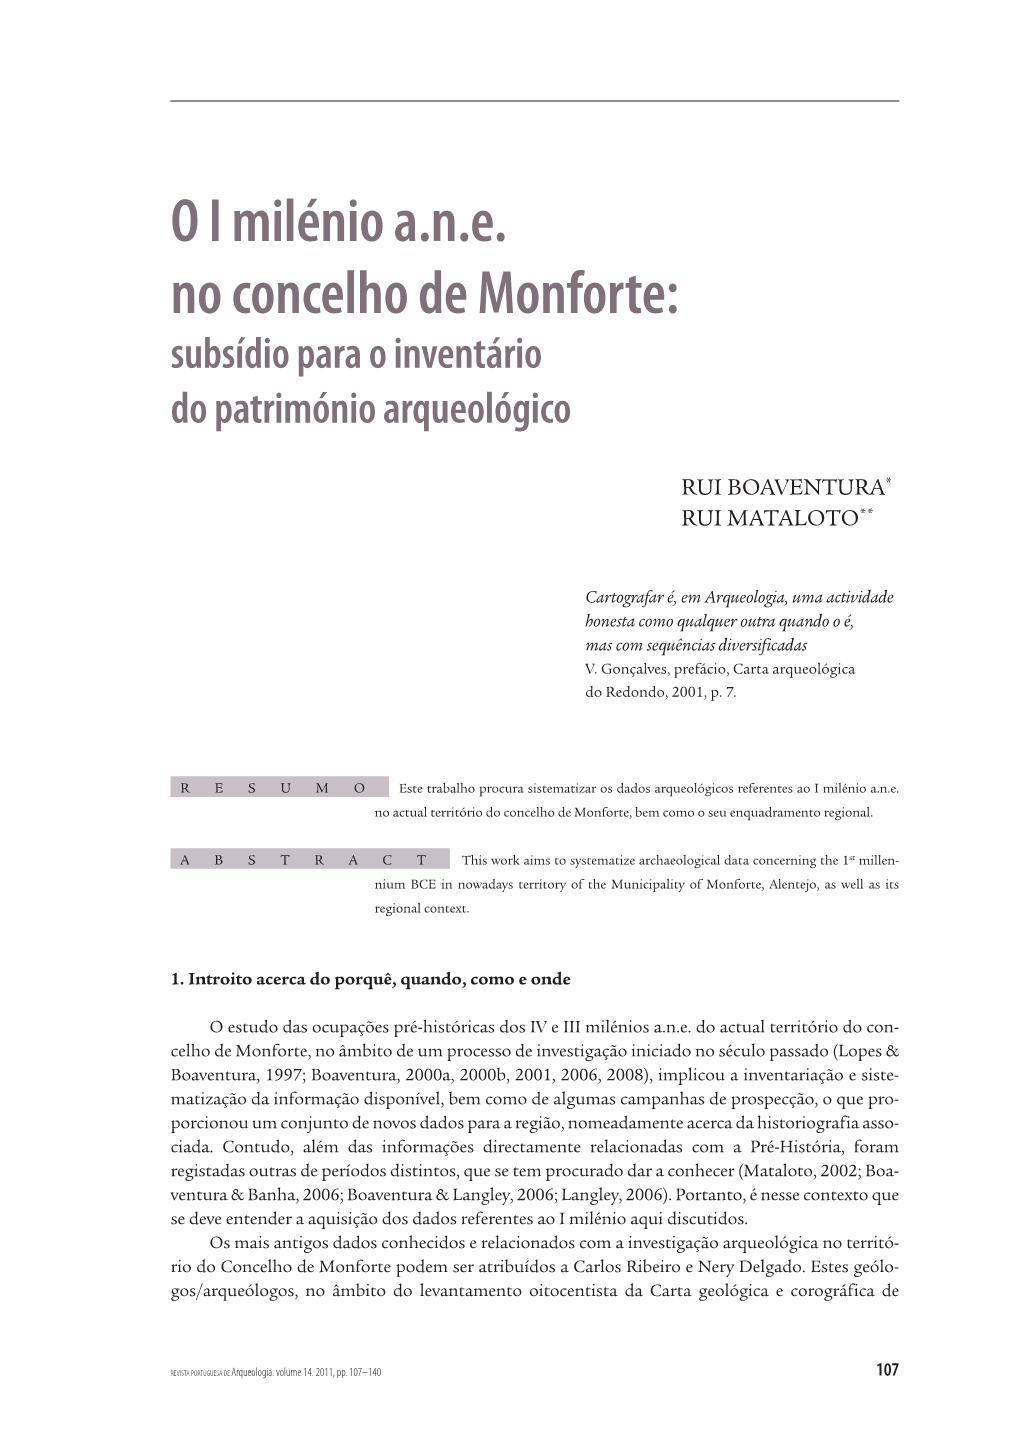 O I Milénio A.N.E. No Concelho De Monforte: Subsídio Para O Inventário Do Património Arqueológico